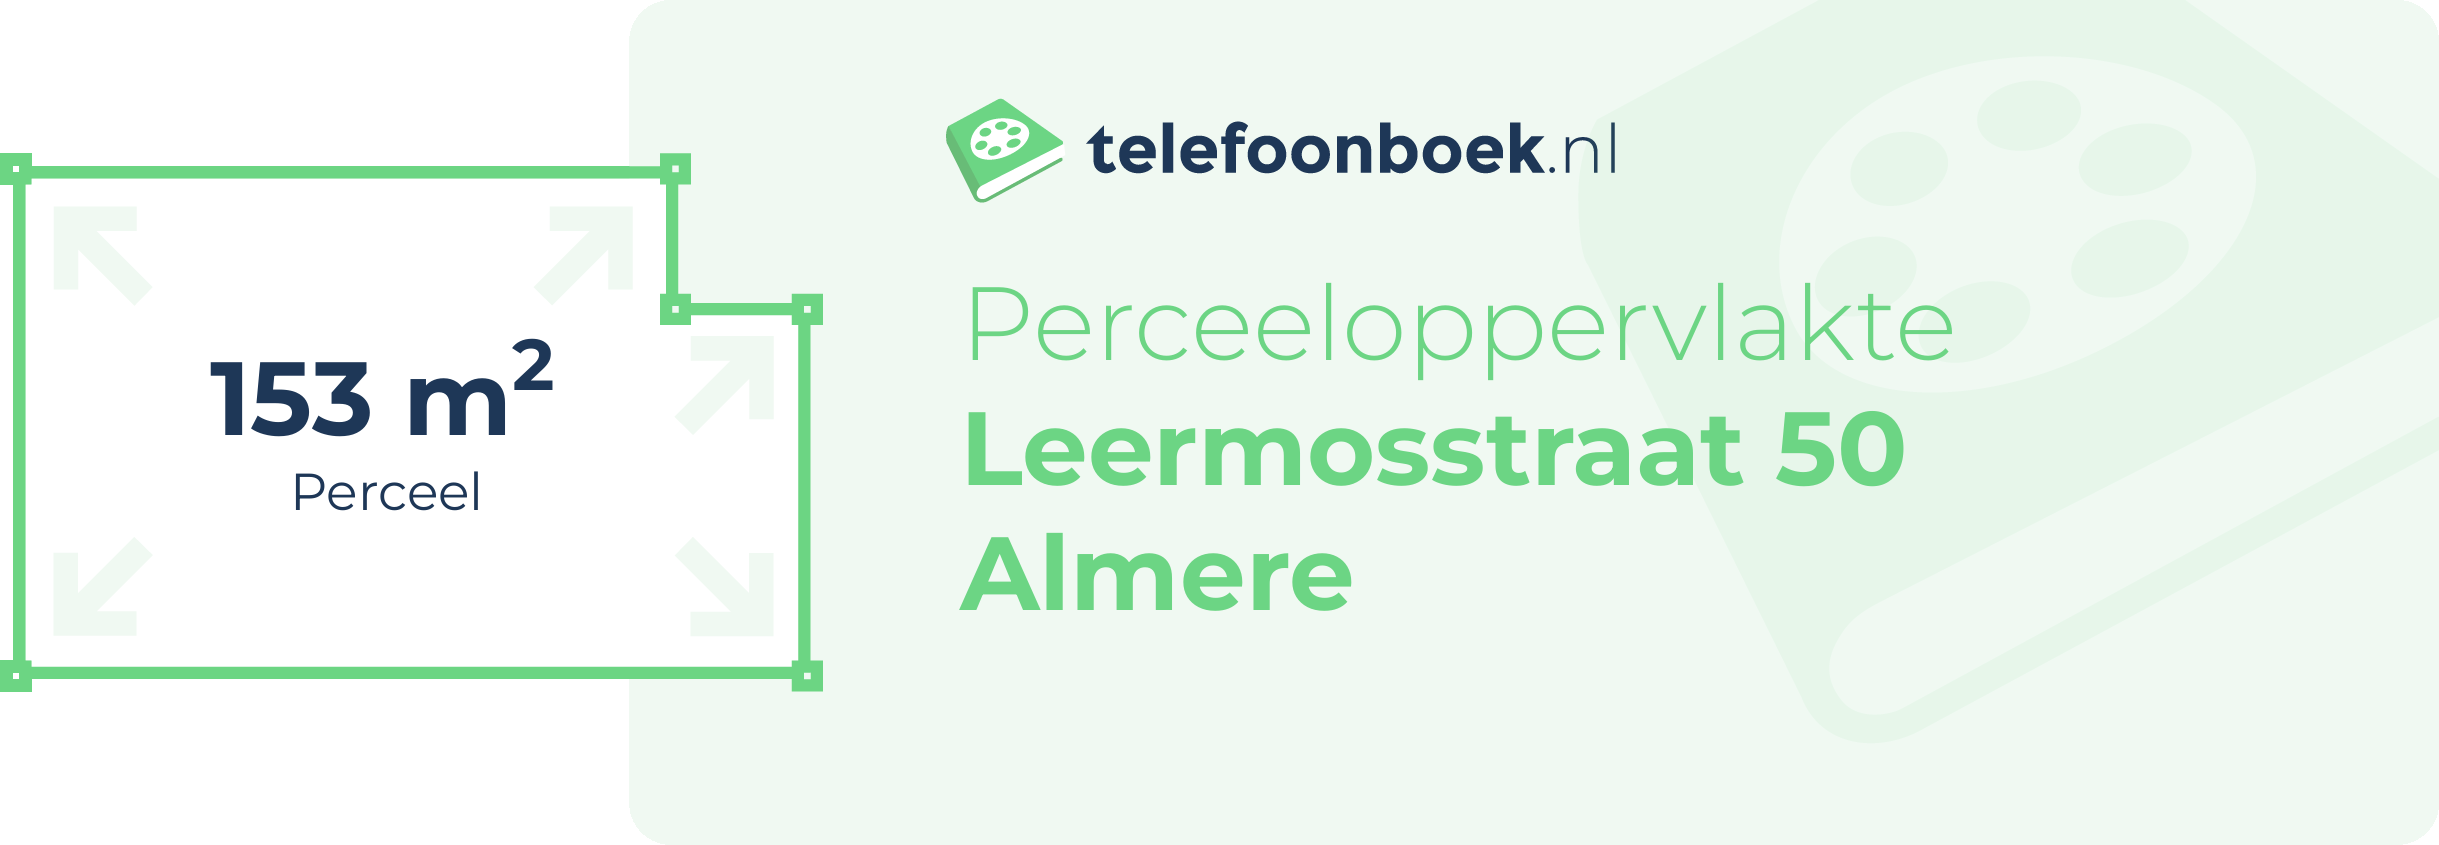 Perceeloppervlakte Leermosstraat 50 Almere